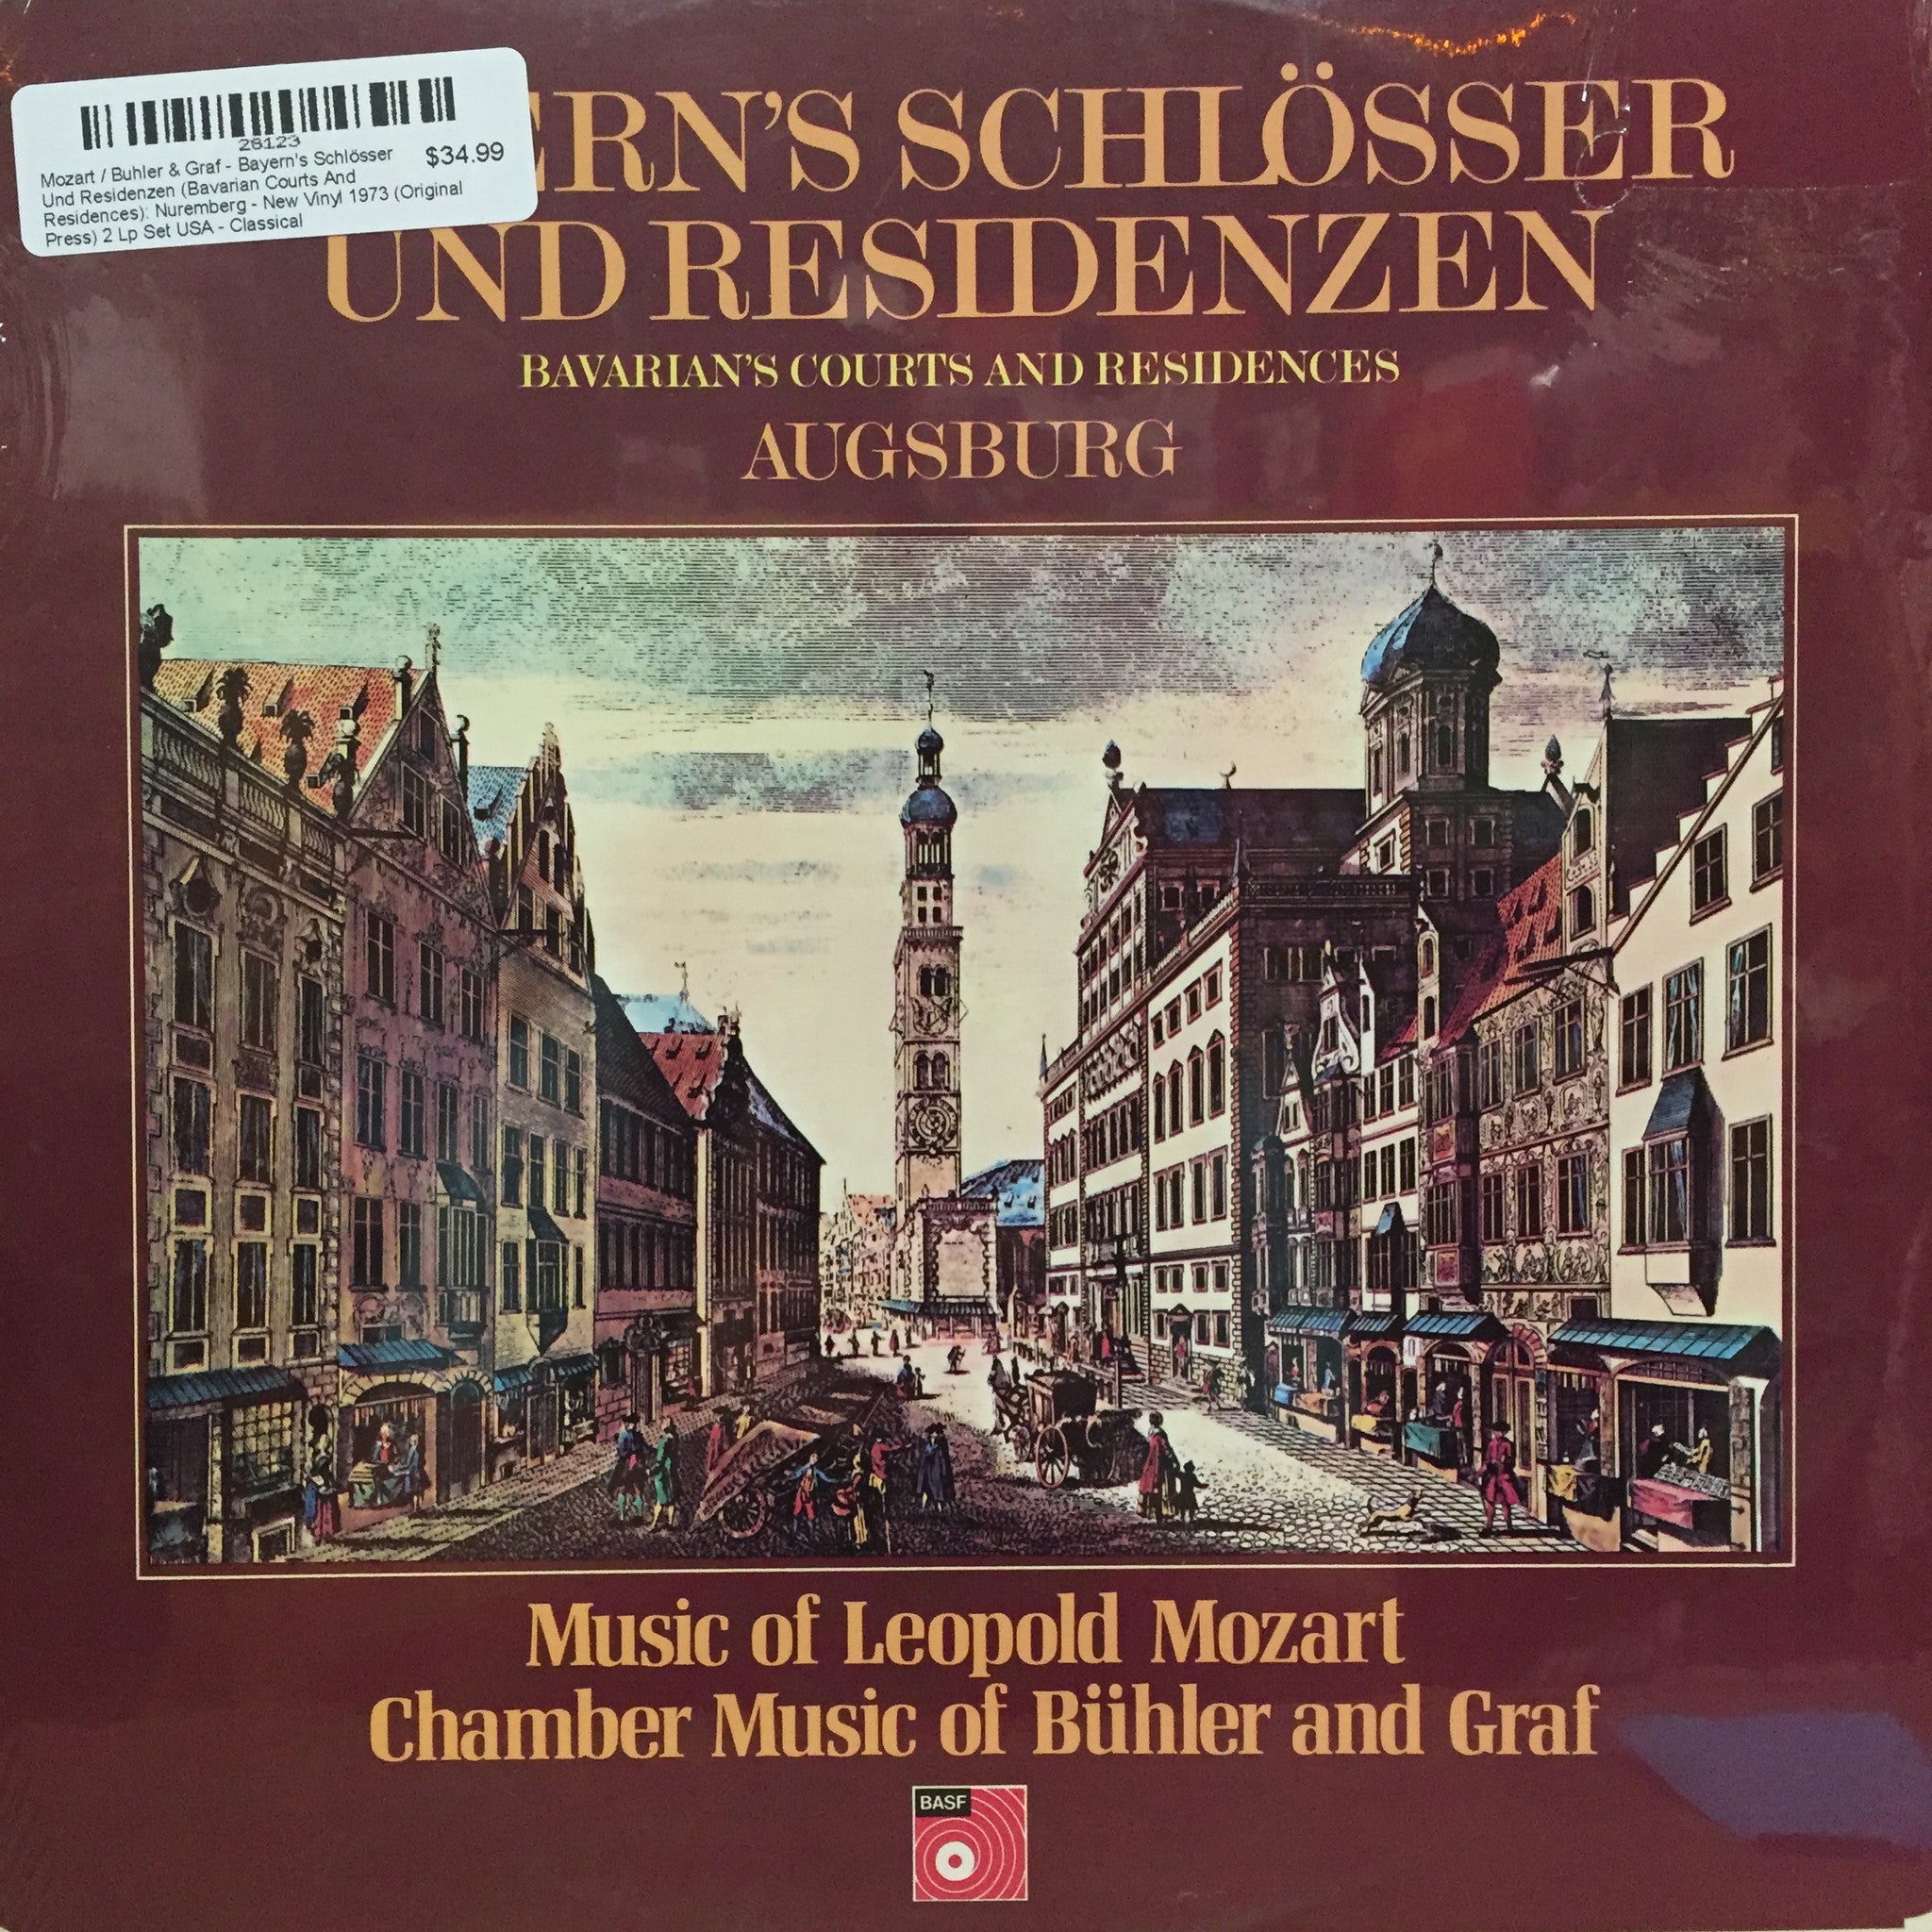 Mozart / Buhler & Graf - Bayern's Schlӧsser Und Residenzen (Bavarian Courts And Residences): Nuremberg - New Vinyl Record 1973 (Original Press) 2 Lp Set USA - Classical